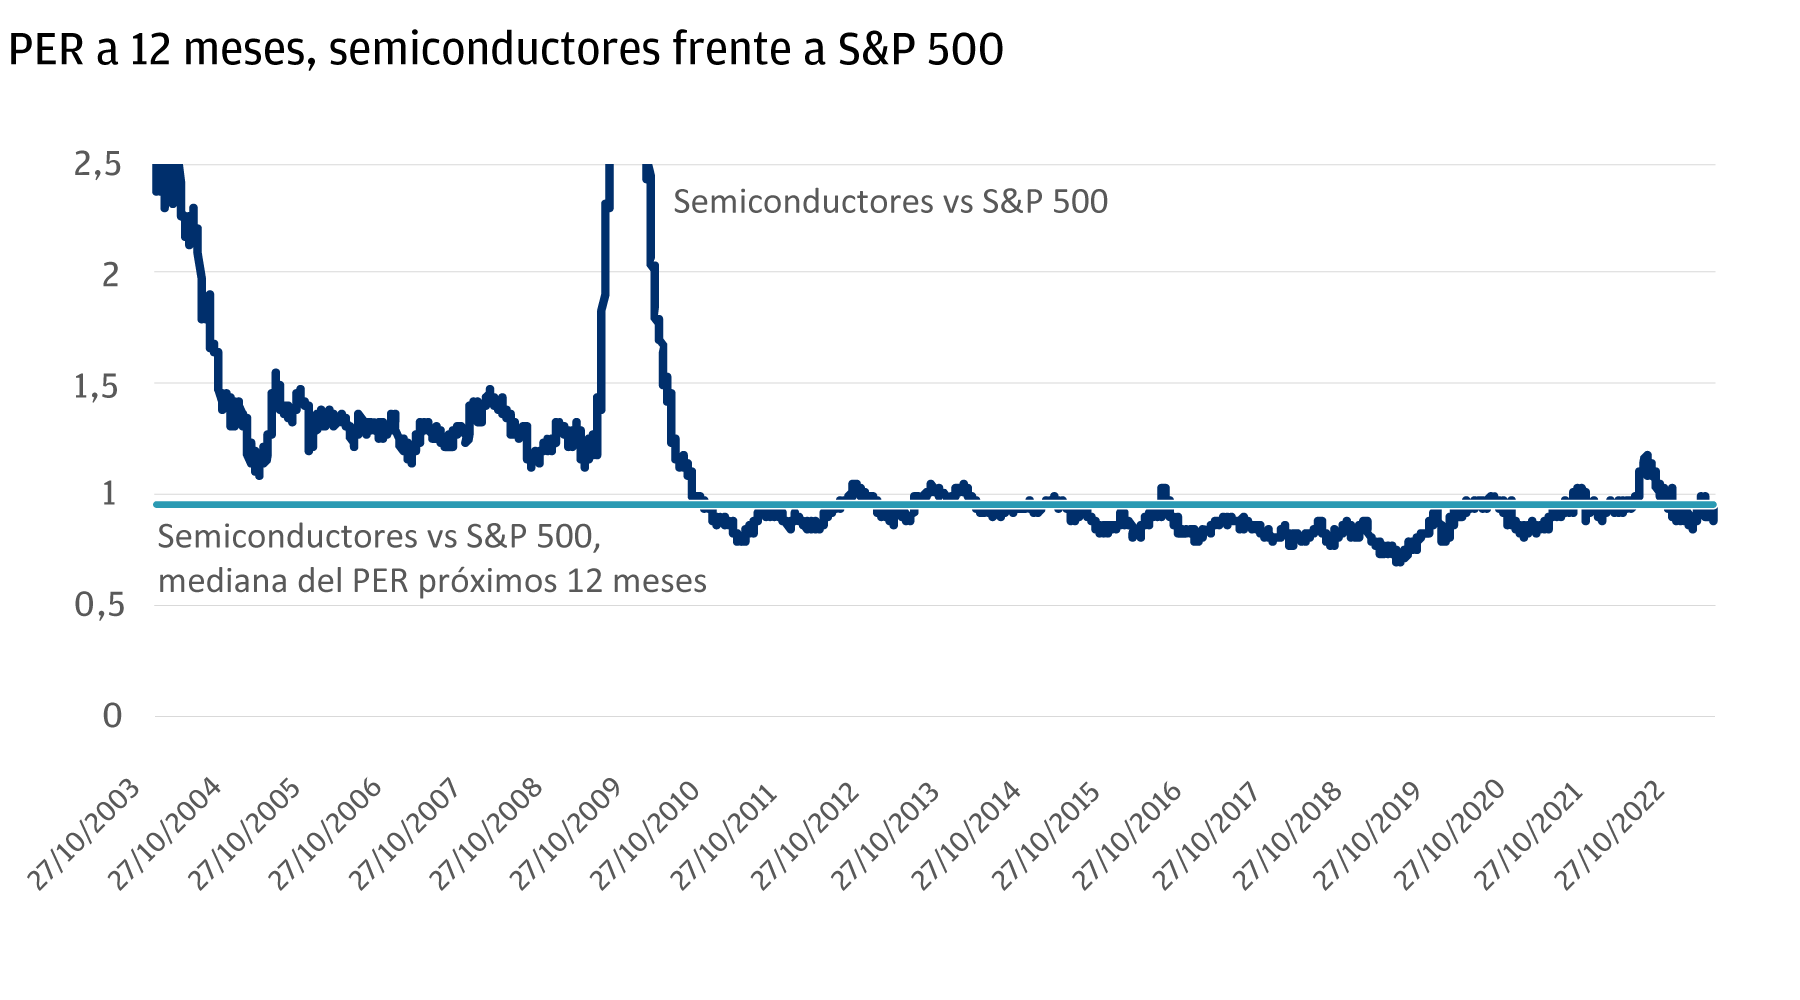 Este gráfico lineal muestra la prima del PER de las acciones de compañías de semiconductores en los próximos 12 meses en relación con el S&P 500. Abarca desde 2003 a 2022. En última instancia, muestra hasta qué punto estas acciones cada año están más caras en relación con la mediana. El ratio comienza en 2,5 veces, a continuación cae fuertemente a entre 1 y 1,5 veces antes de despuntar en 2008/2009, volviendo a caer desde 2010 a un nivel en torno a 1 vez, donde permanece. 